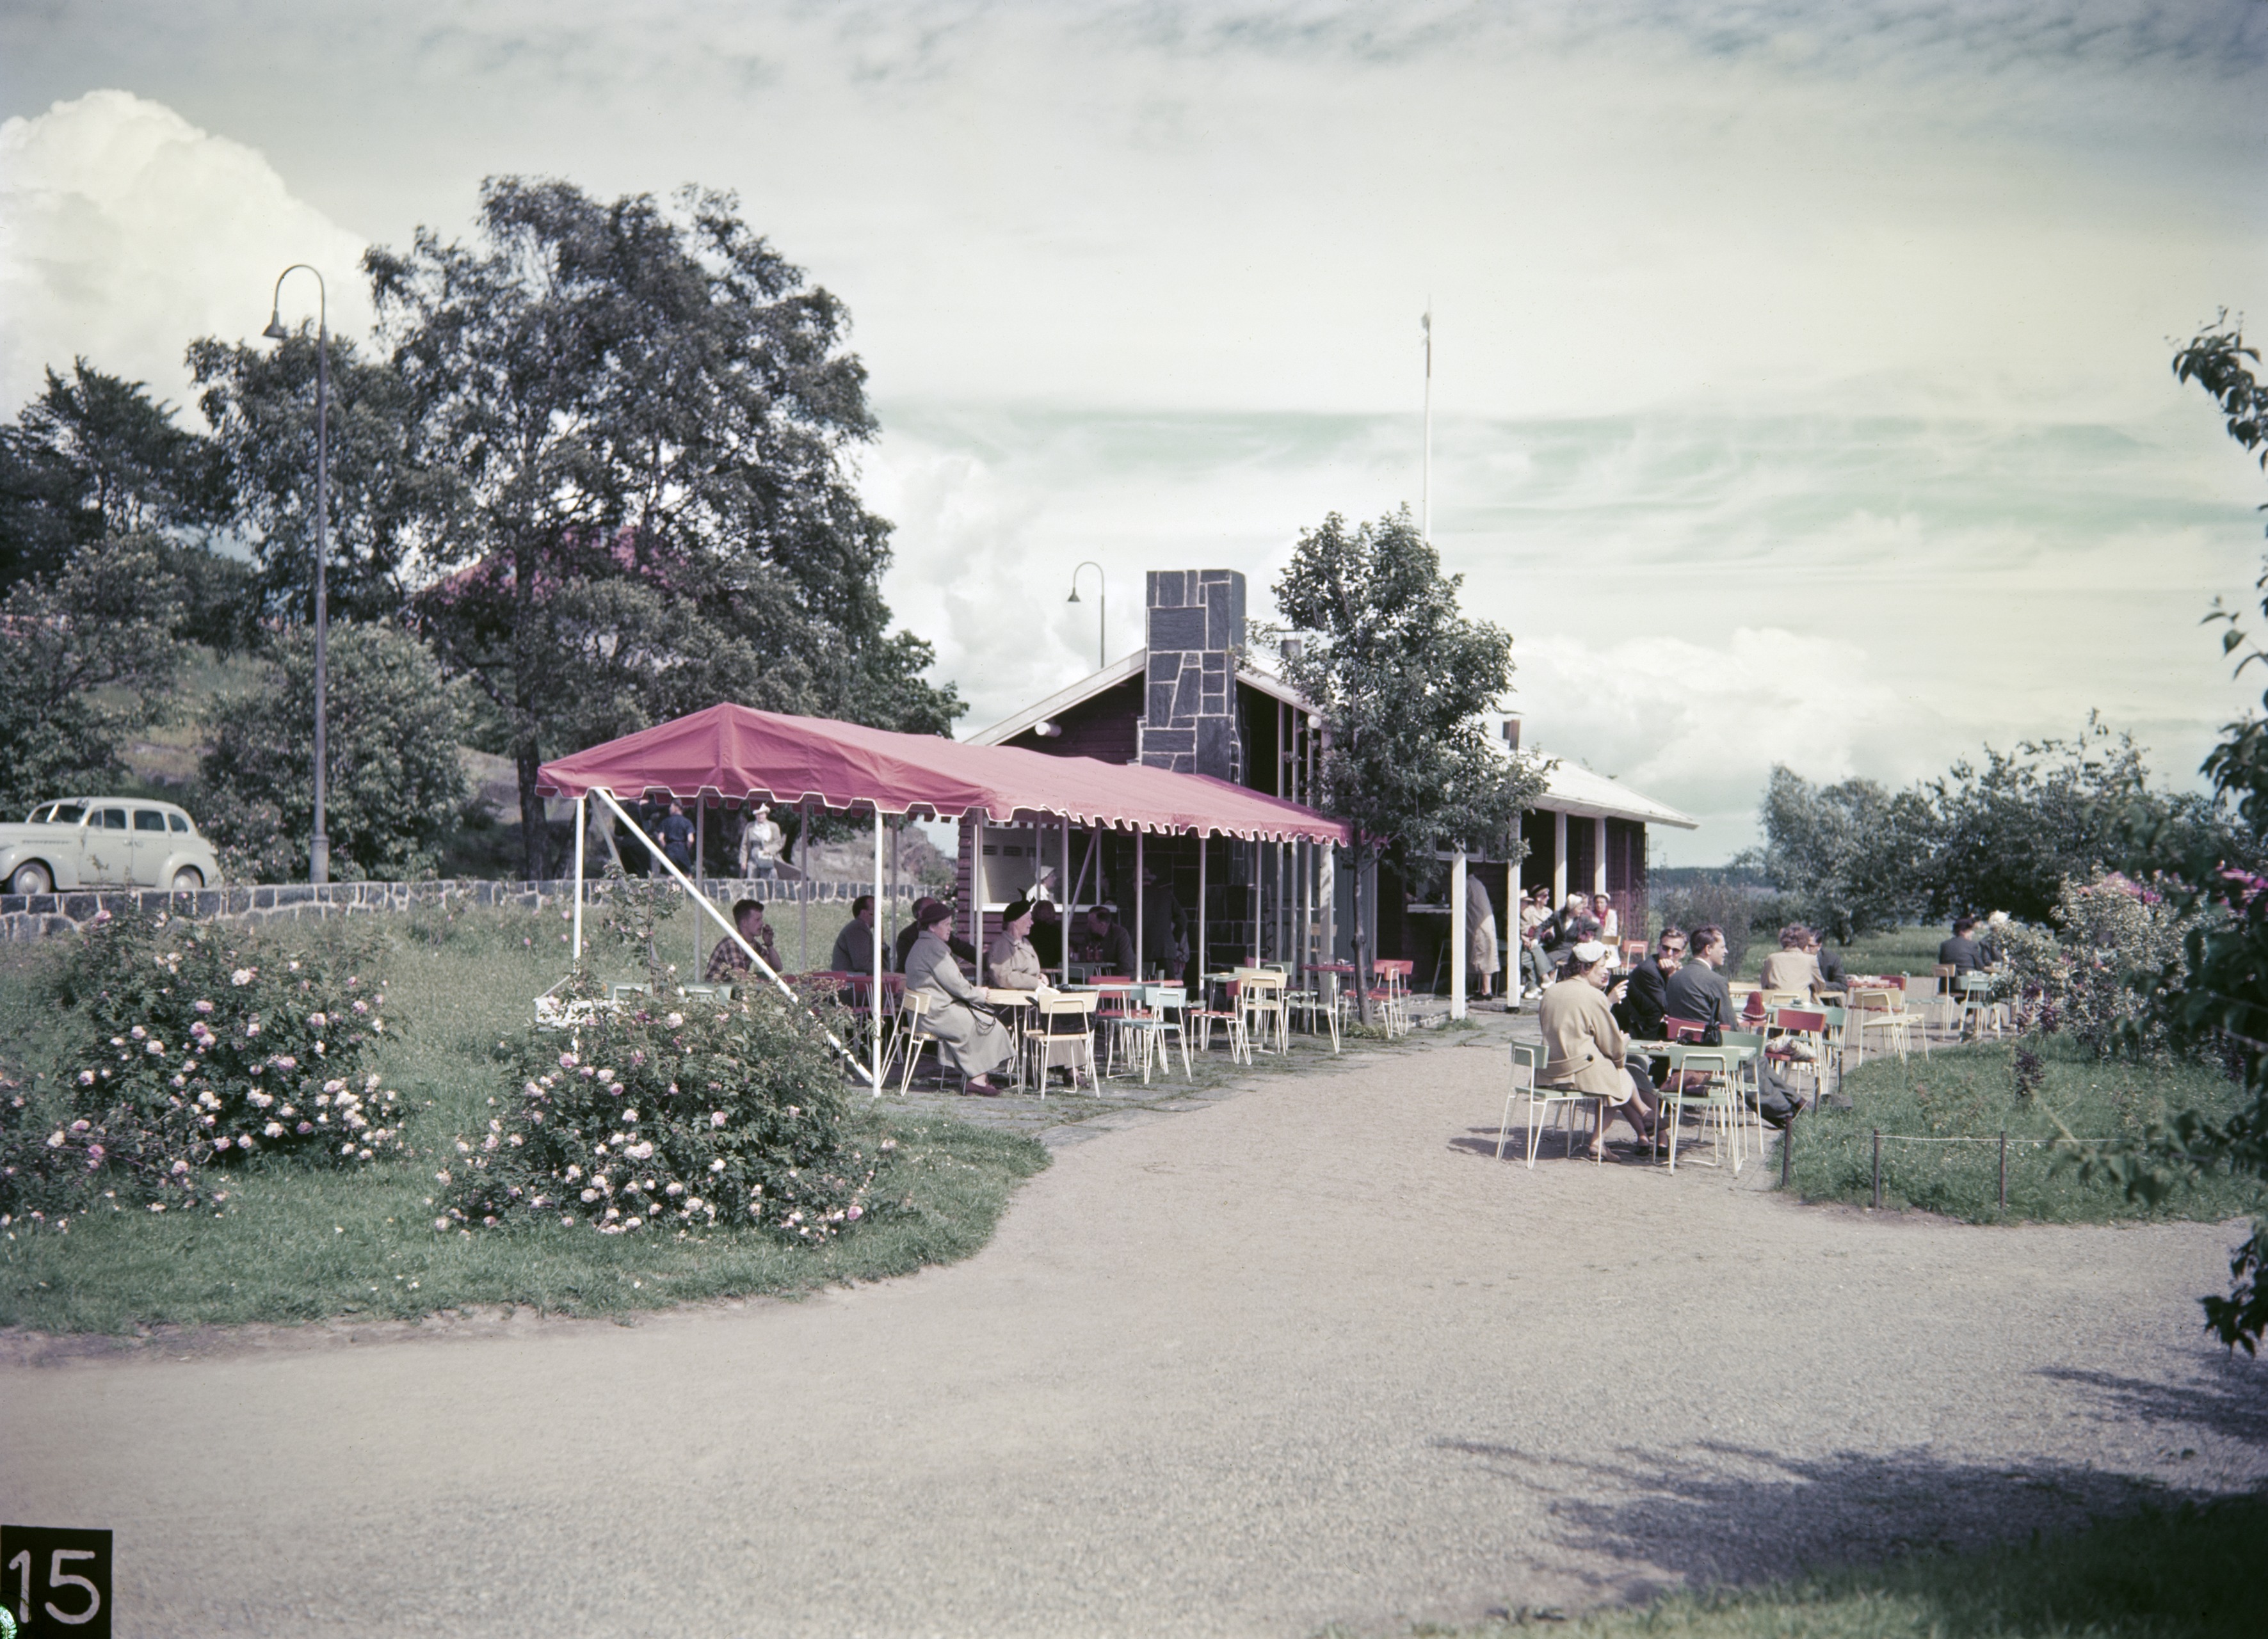 Helsinki olympialaiset 1952. Kahvila Ursula Kaivopuiston rannassa. Perustettiin kesäkahvilaksi olympialaisia varten.